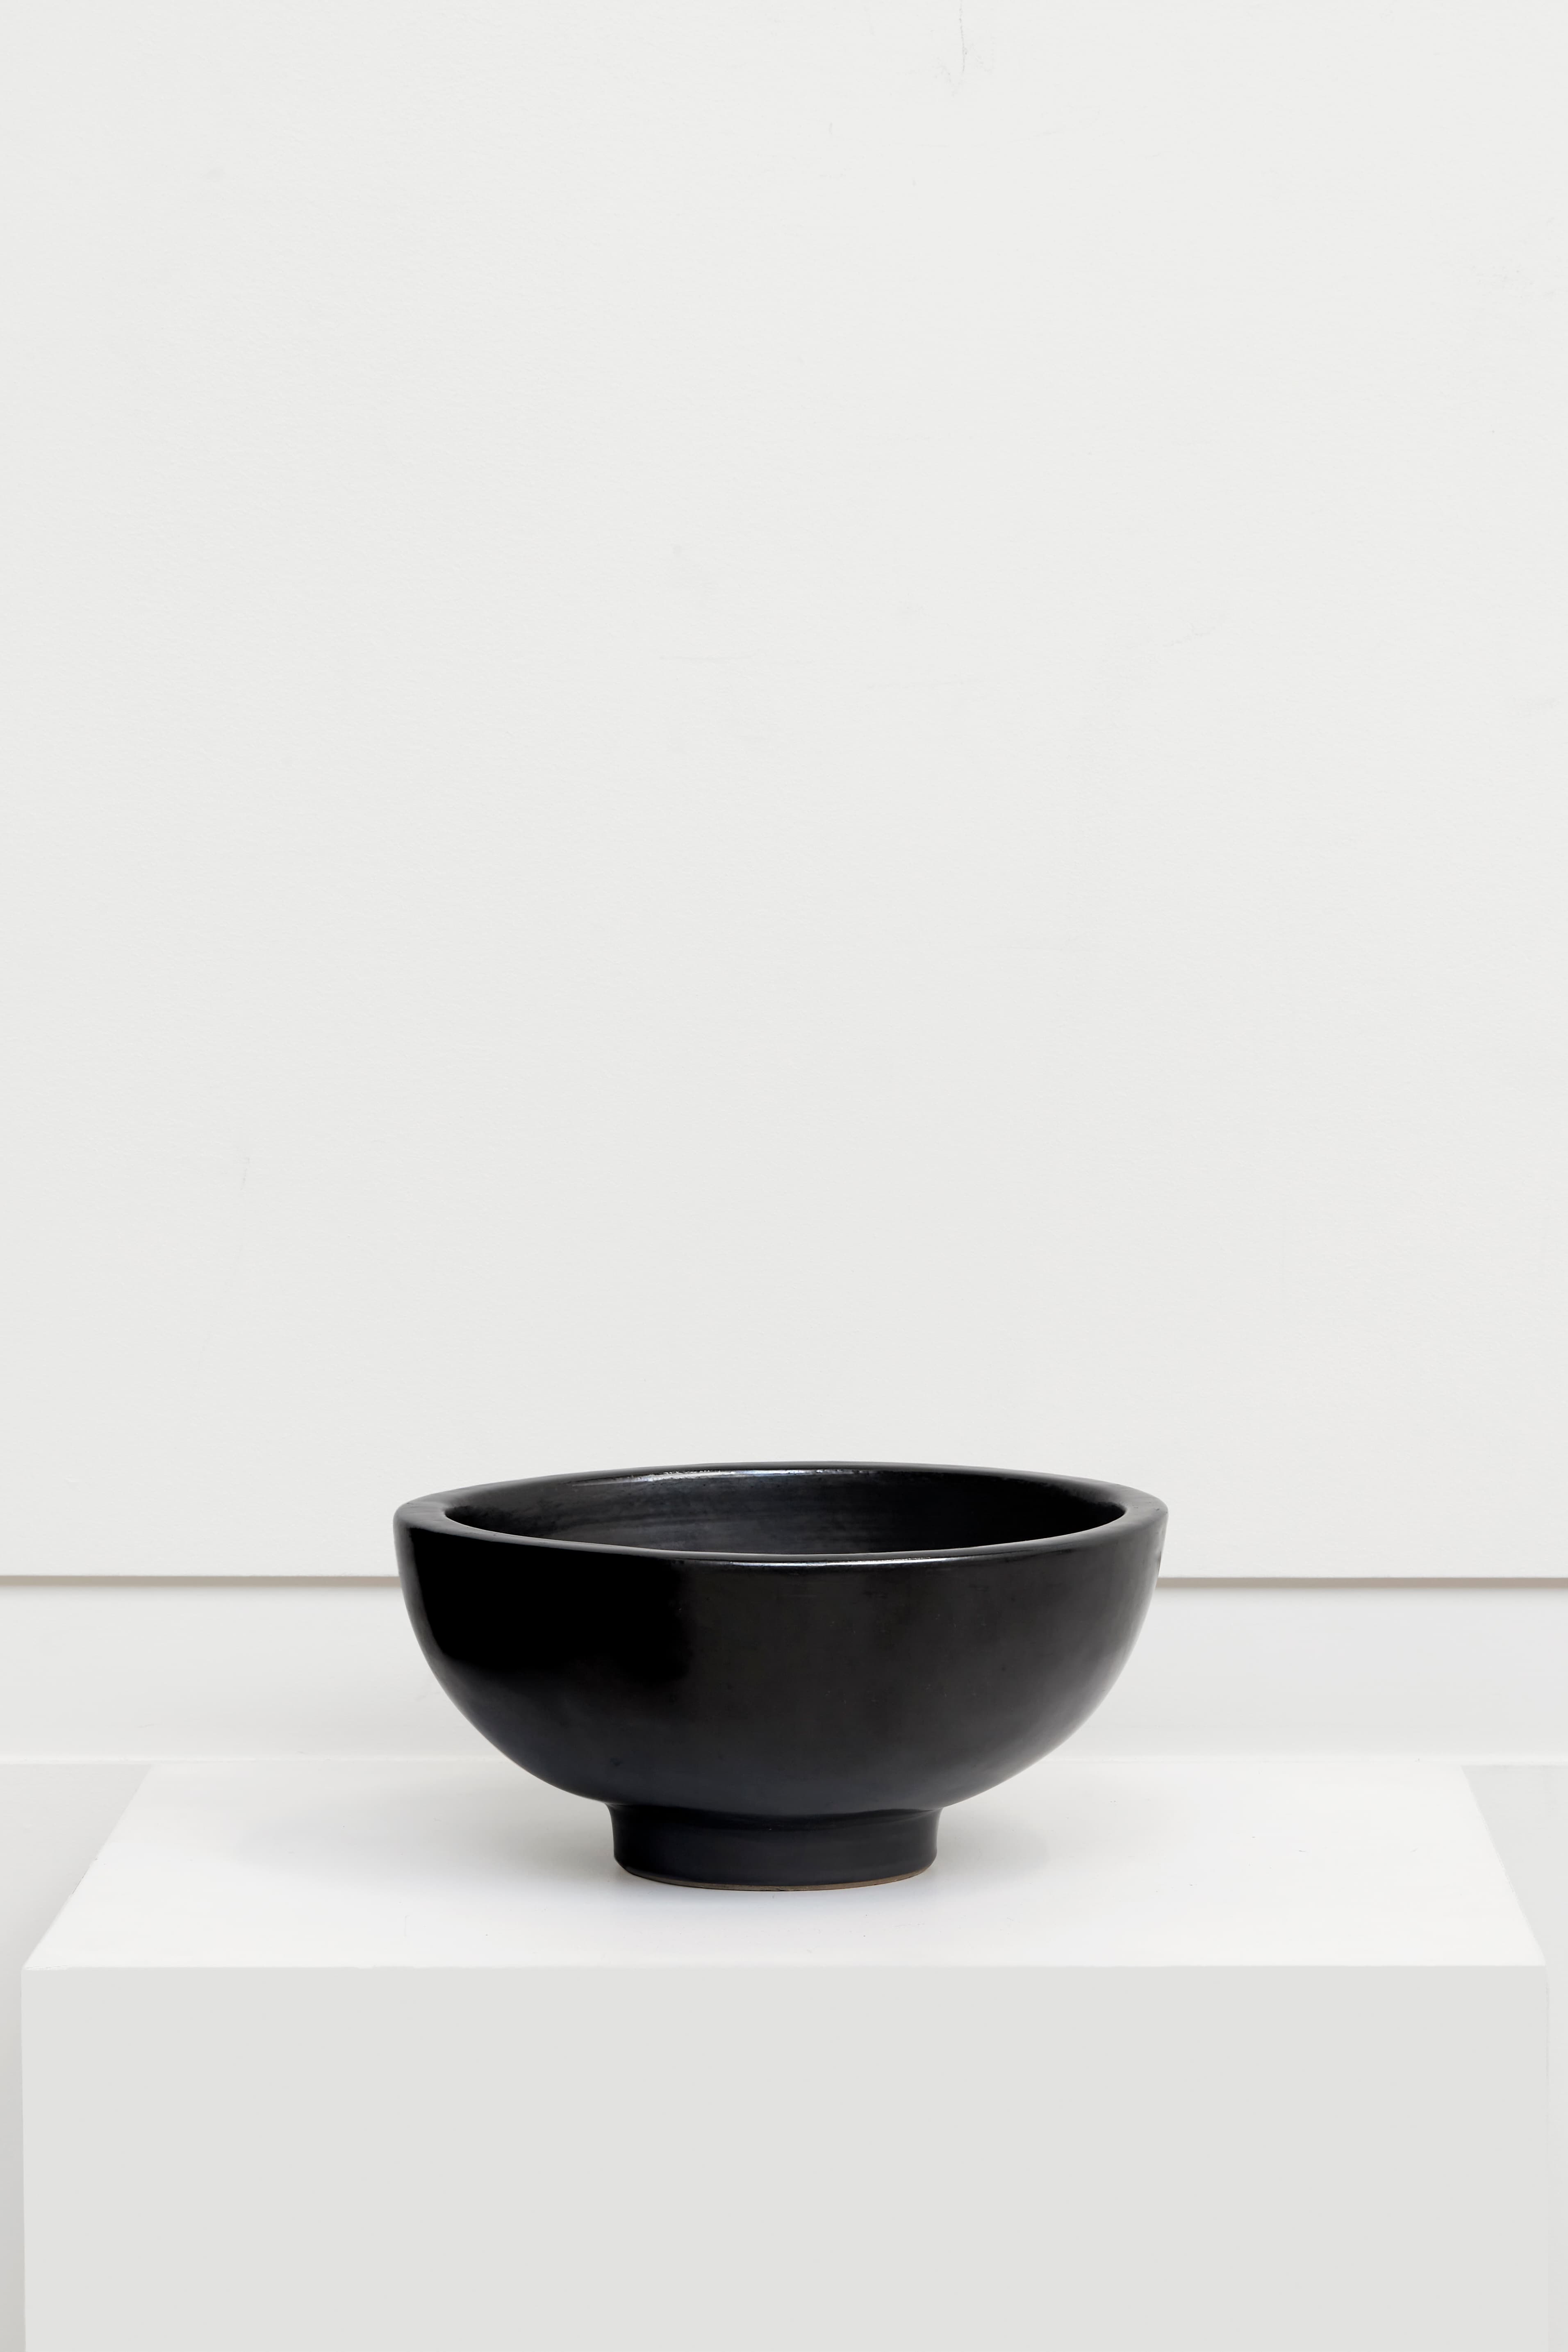 Georges Jouve, black enameled bowl, vue 01